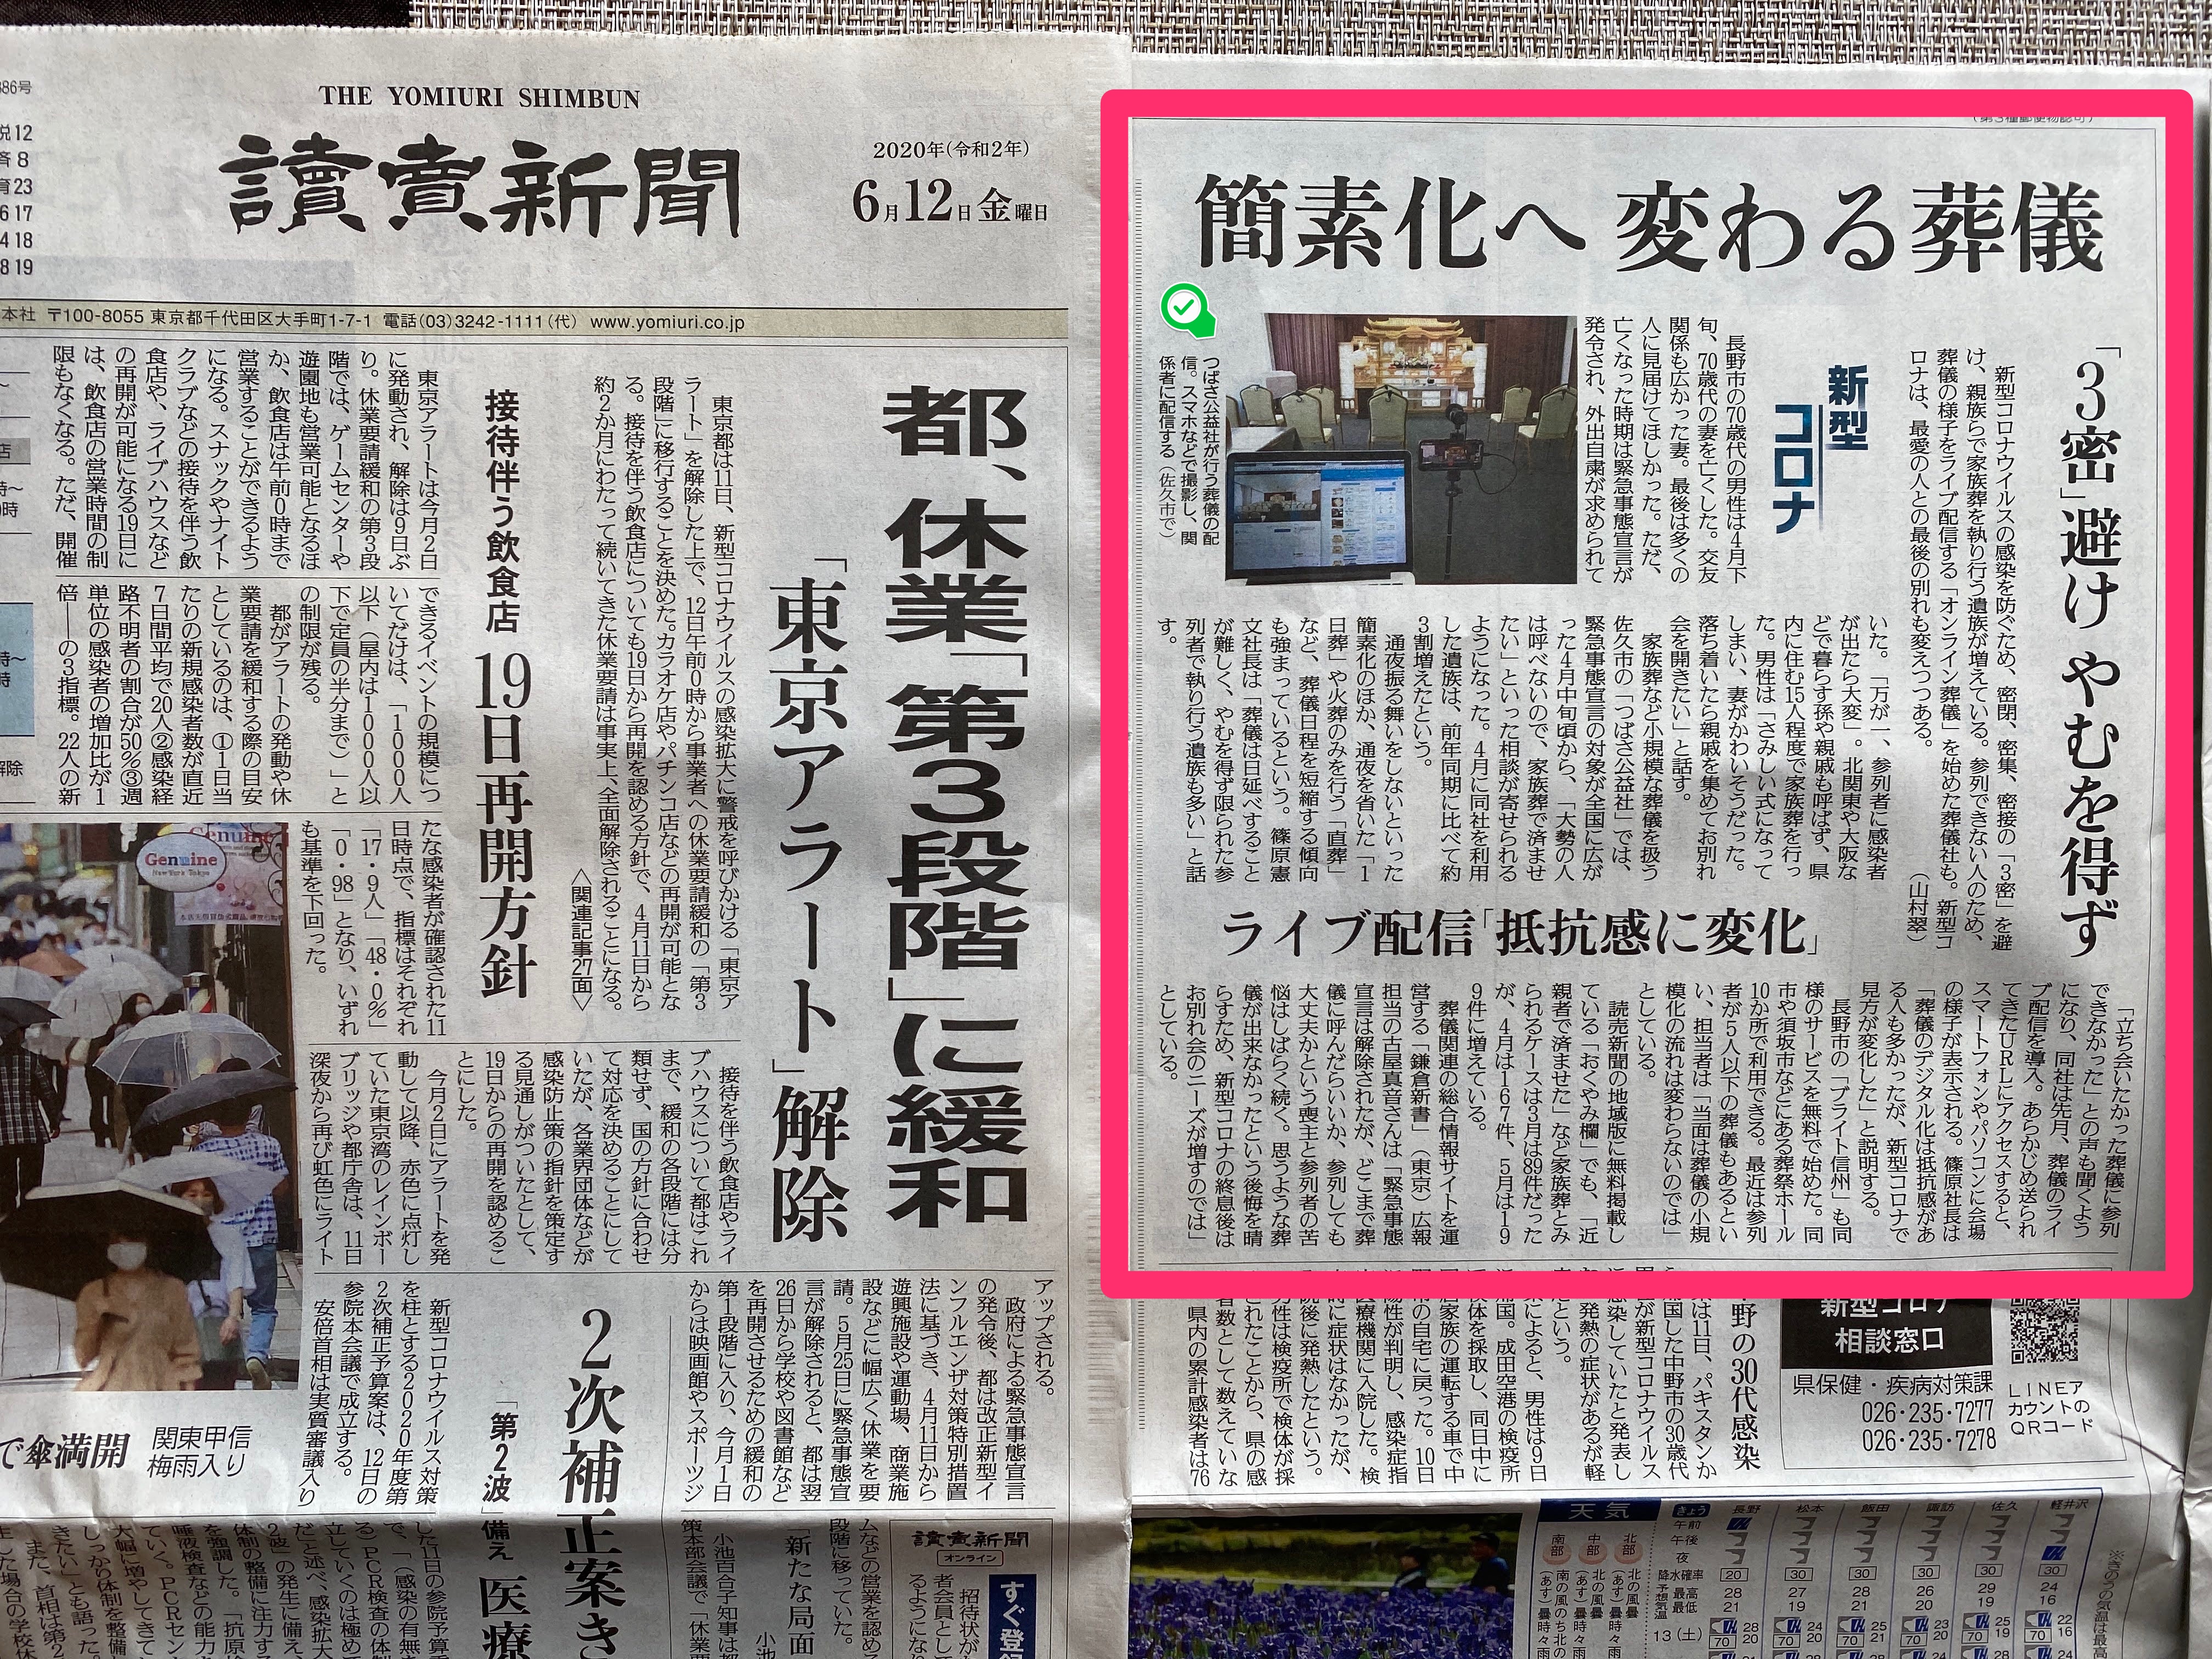 読売新聞 長野版へ「つばさのお葬式ライブ」ご紹介いただきました。